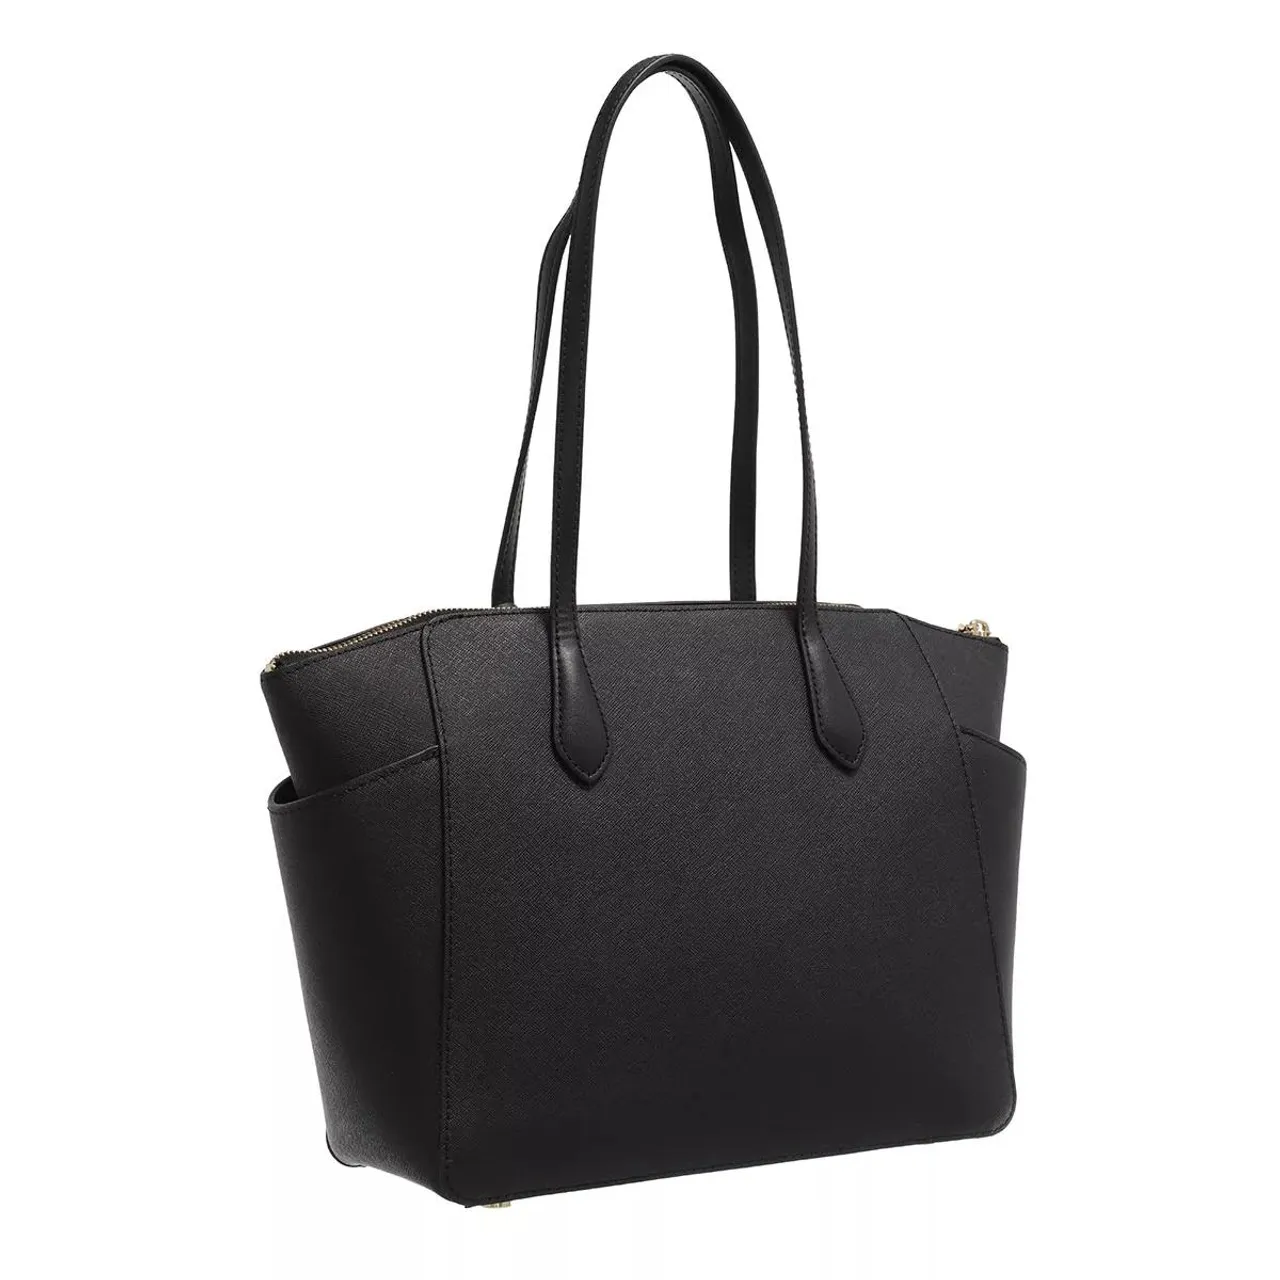 Michael Kors Tote Bags - Medium Tote - black - Tote Bags for ladies